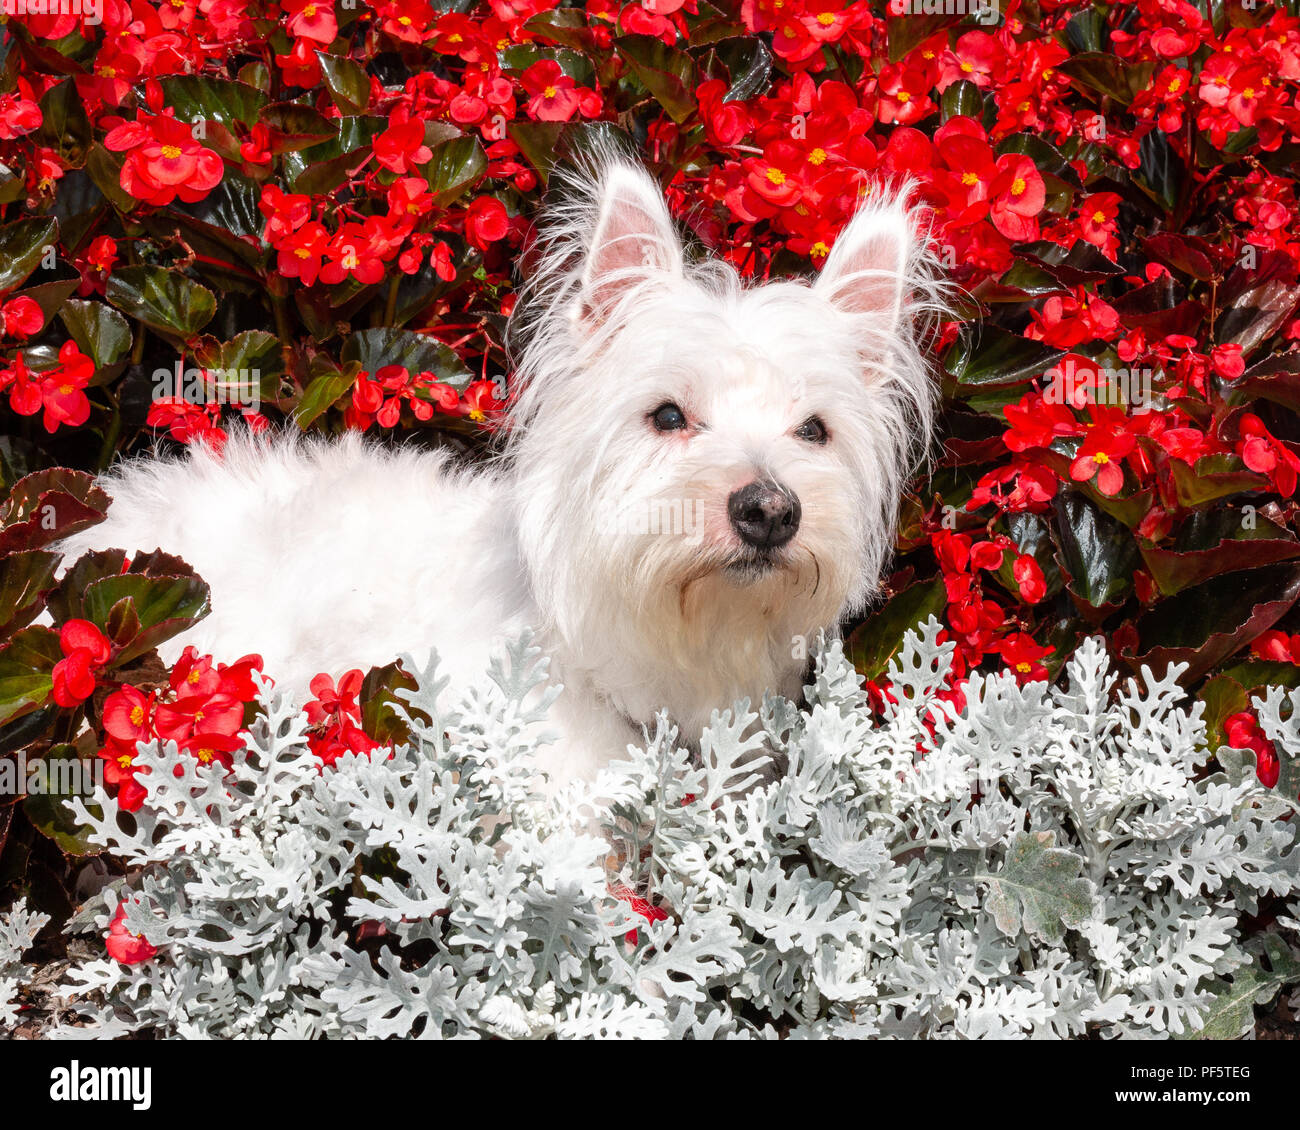 Carino e cordiale, West Highland White Terrier,Westie, cane che giace nel letto di fiori nel giardino Foto Stock